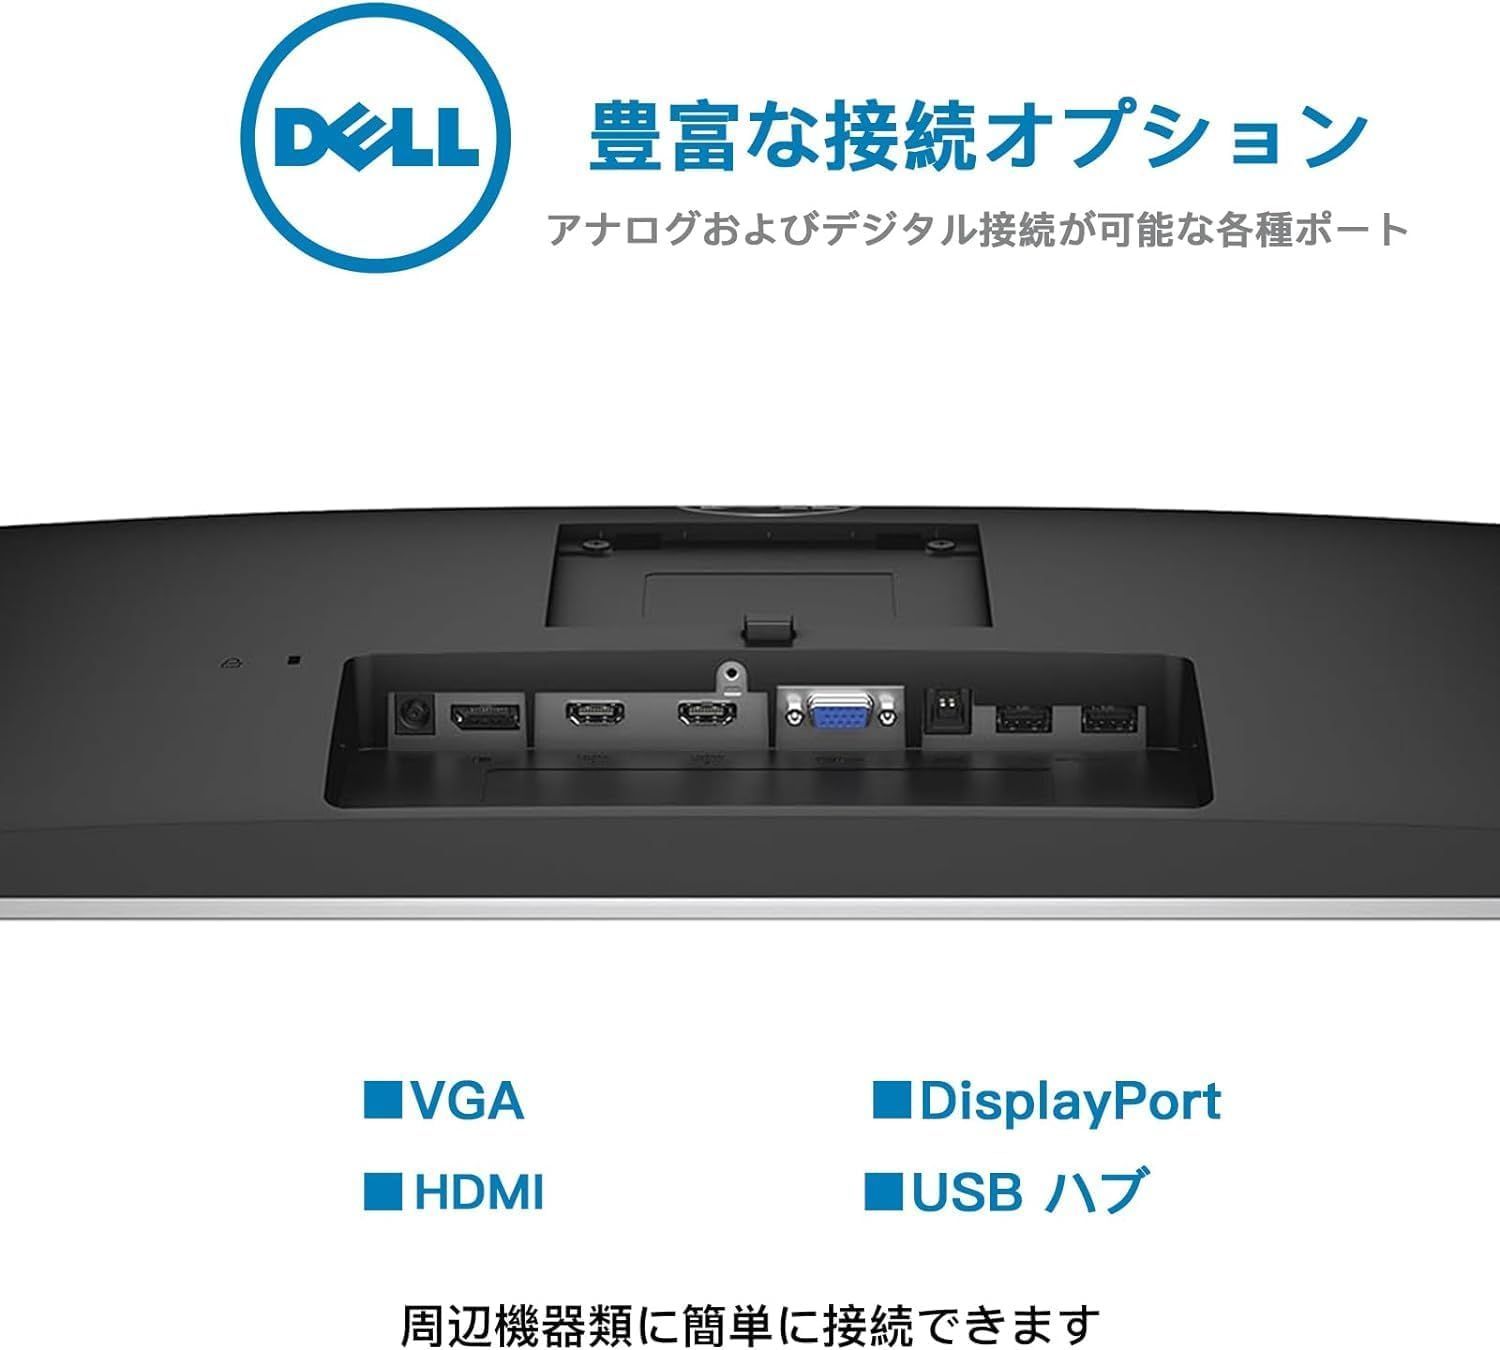 Dell UZ2315h ロフェッショナル 23インチ メディアモニター、IPS マルチ フルHD（1920x1080）中古モニター